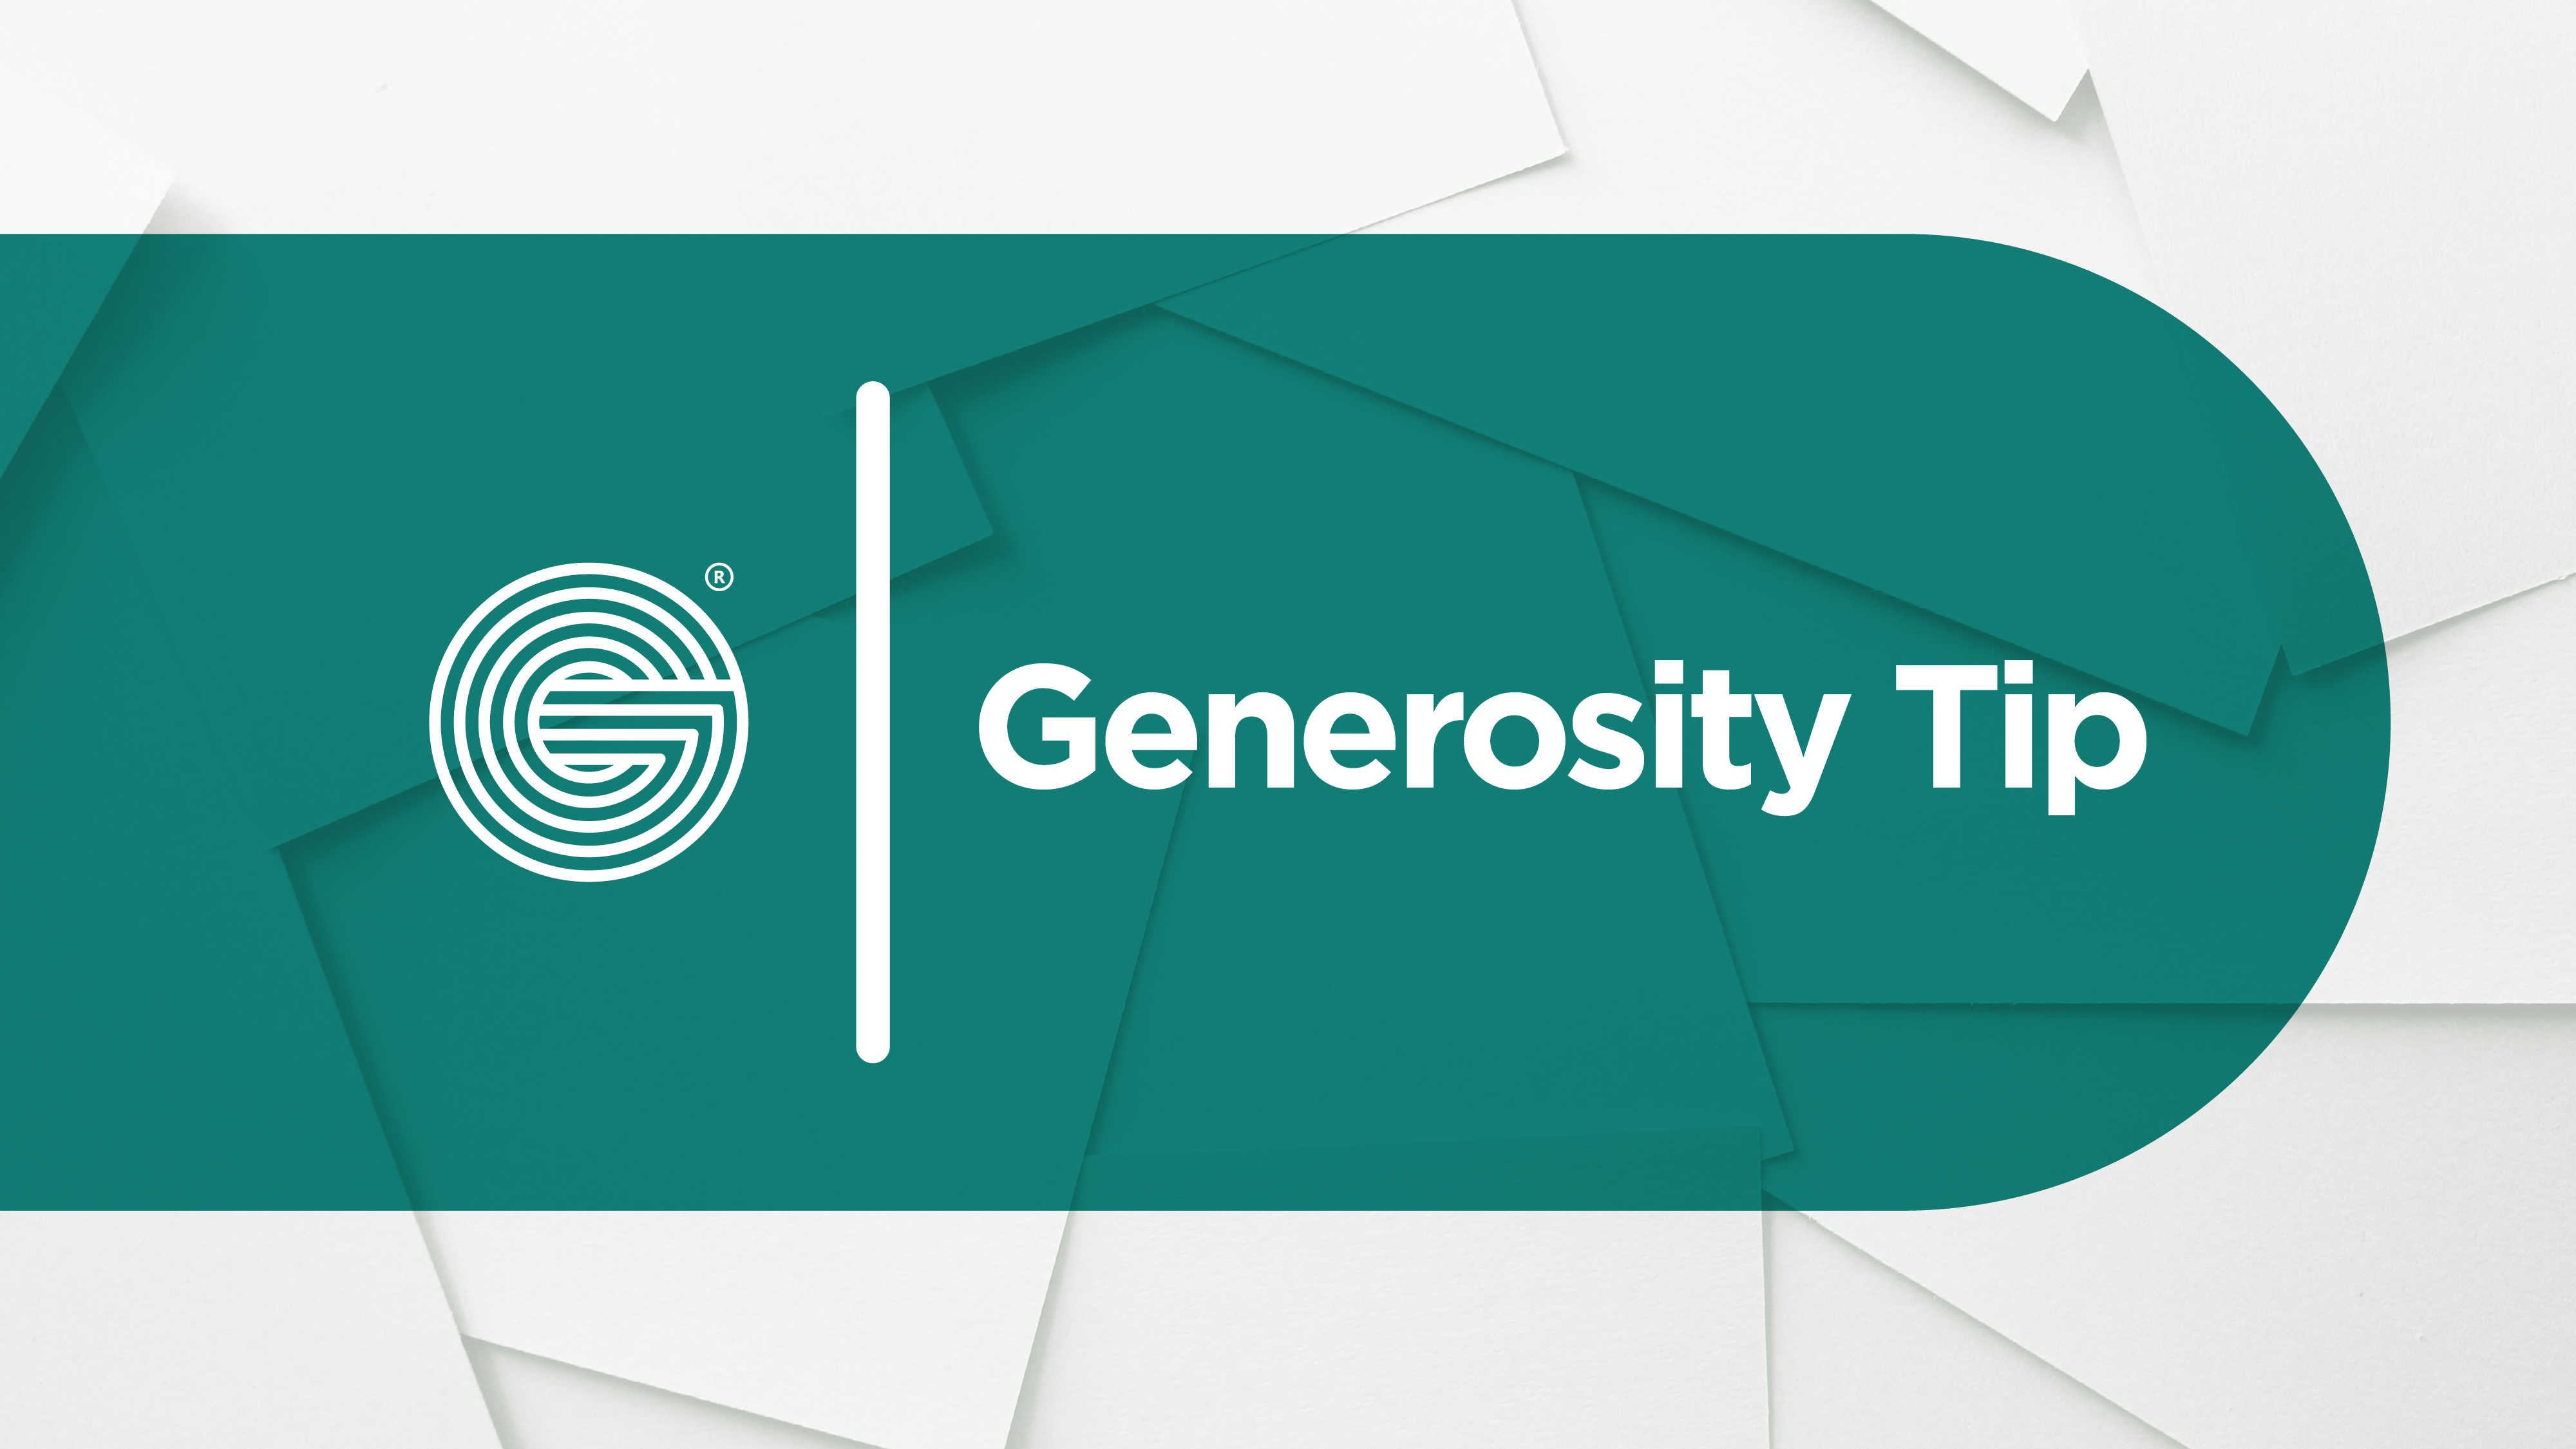 NextGen Generosity: Has Your Church Cracked the Code?